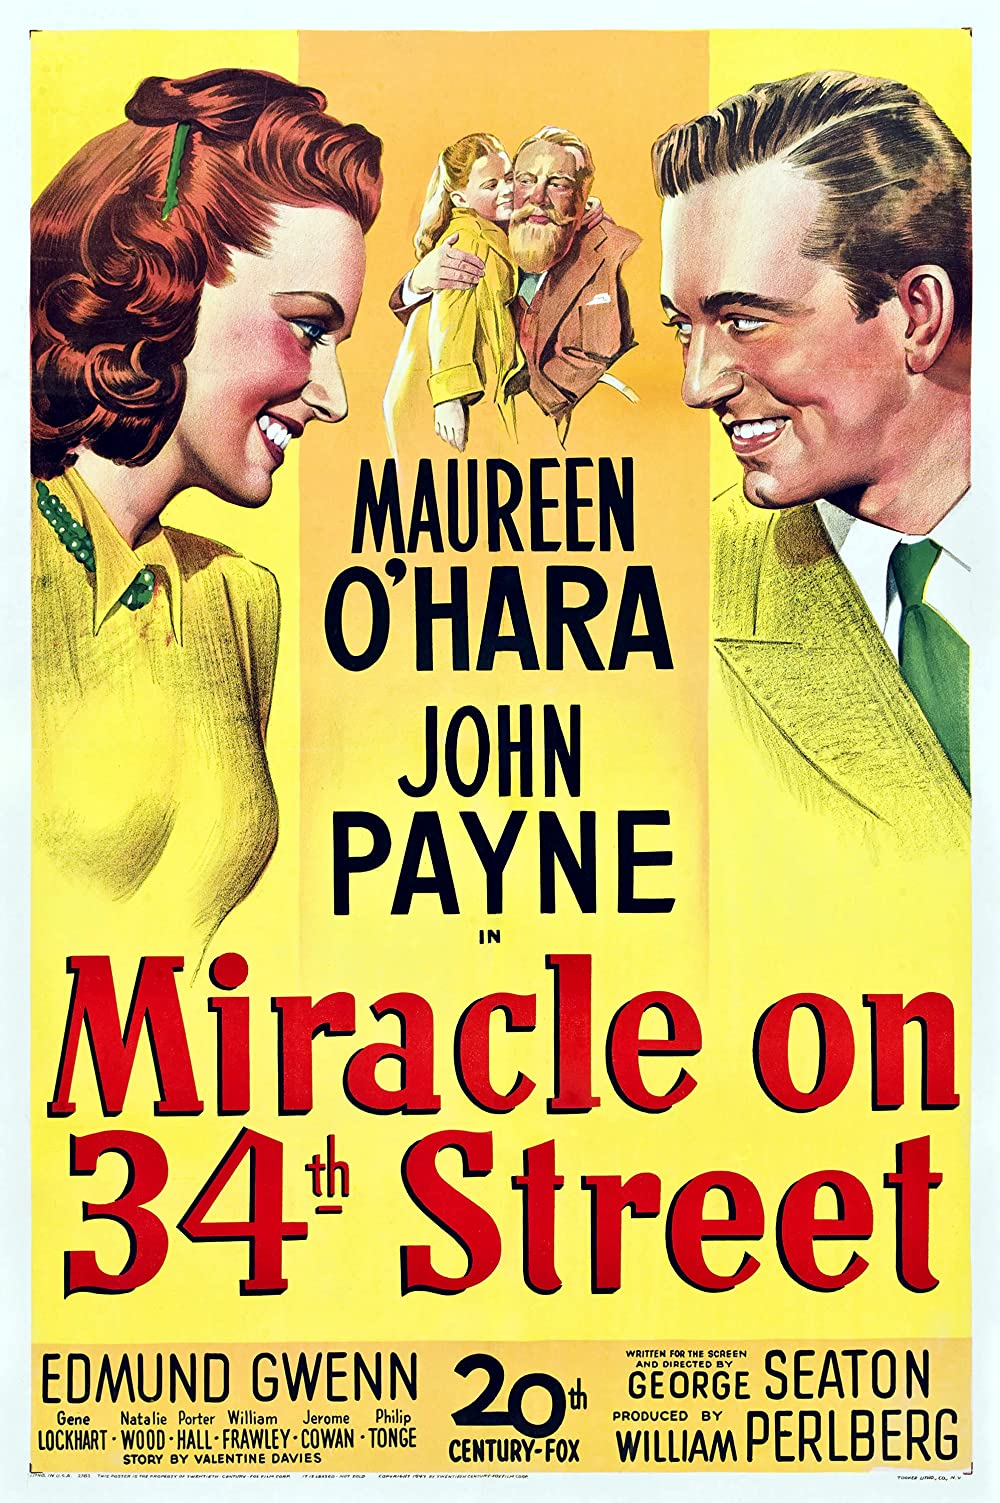 Filmbeschreibung zu Miracle on 34th Street